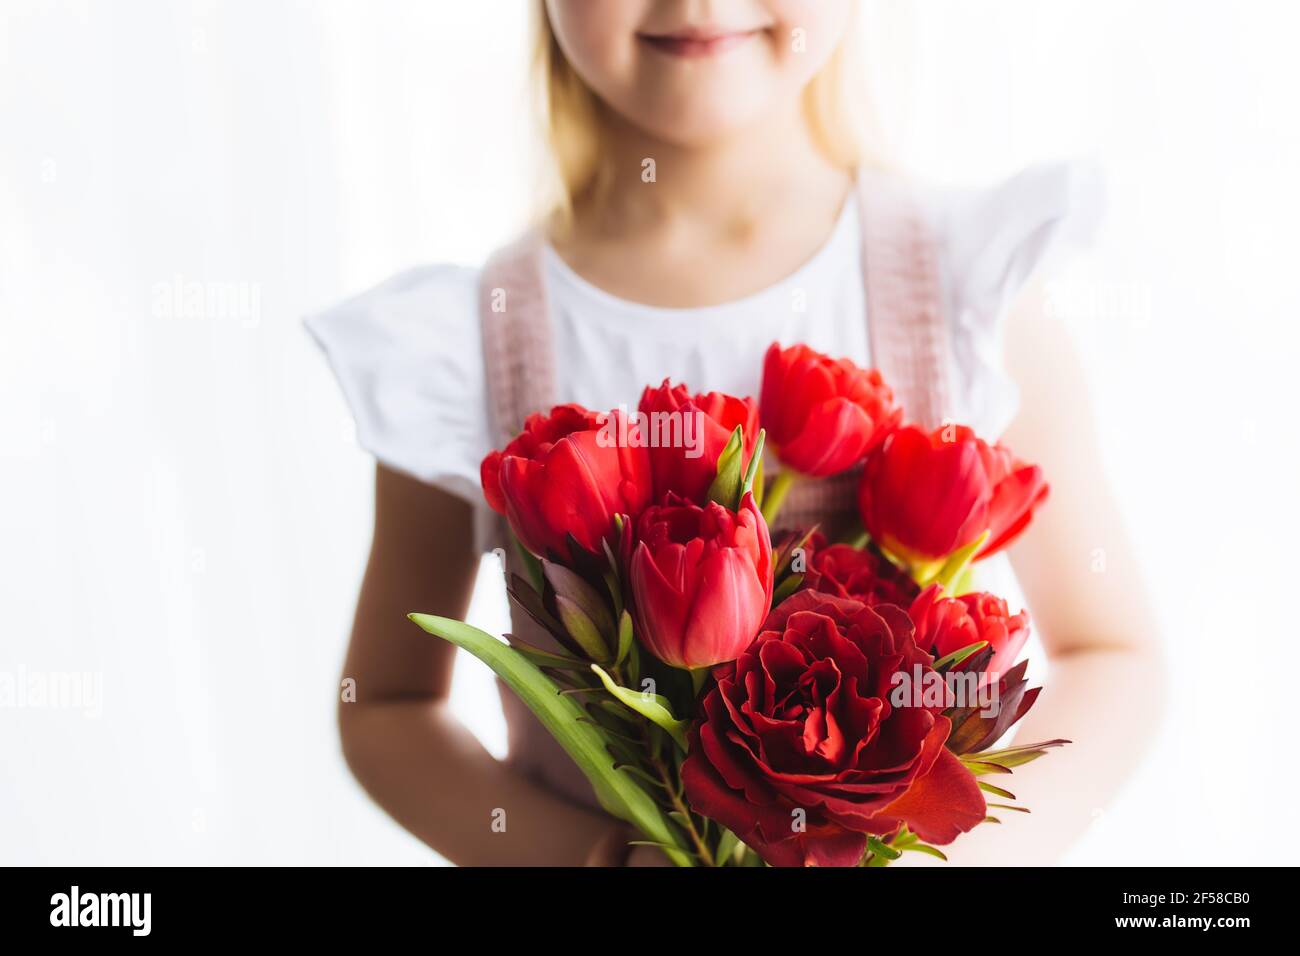 Petite fille souriante tenant un bouquet de fleurs de tulipe rouges. Concept de carte de voeux pour Pâques, Fête des mères, Journée internationale de la femme, Saint Valentin Banque D'Images